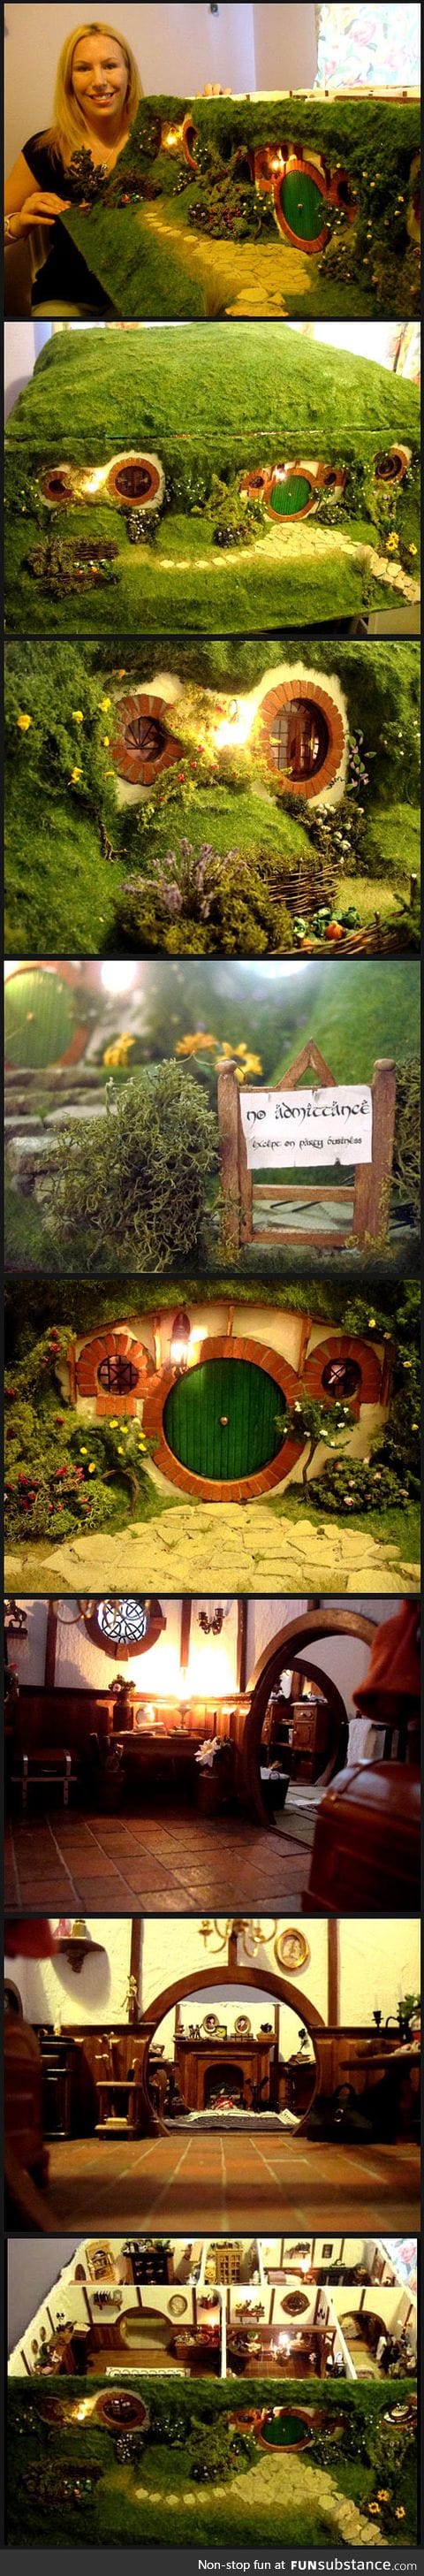 Ever seen a hobbit dollhouse?